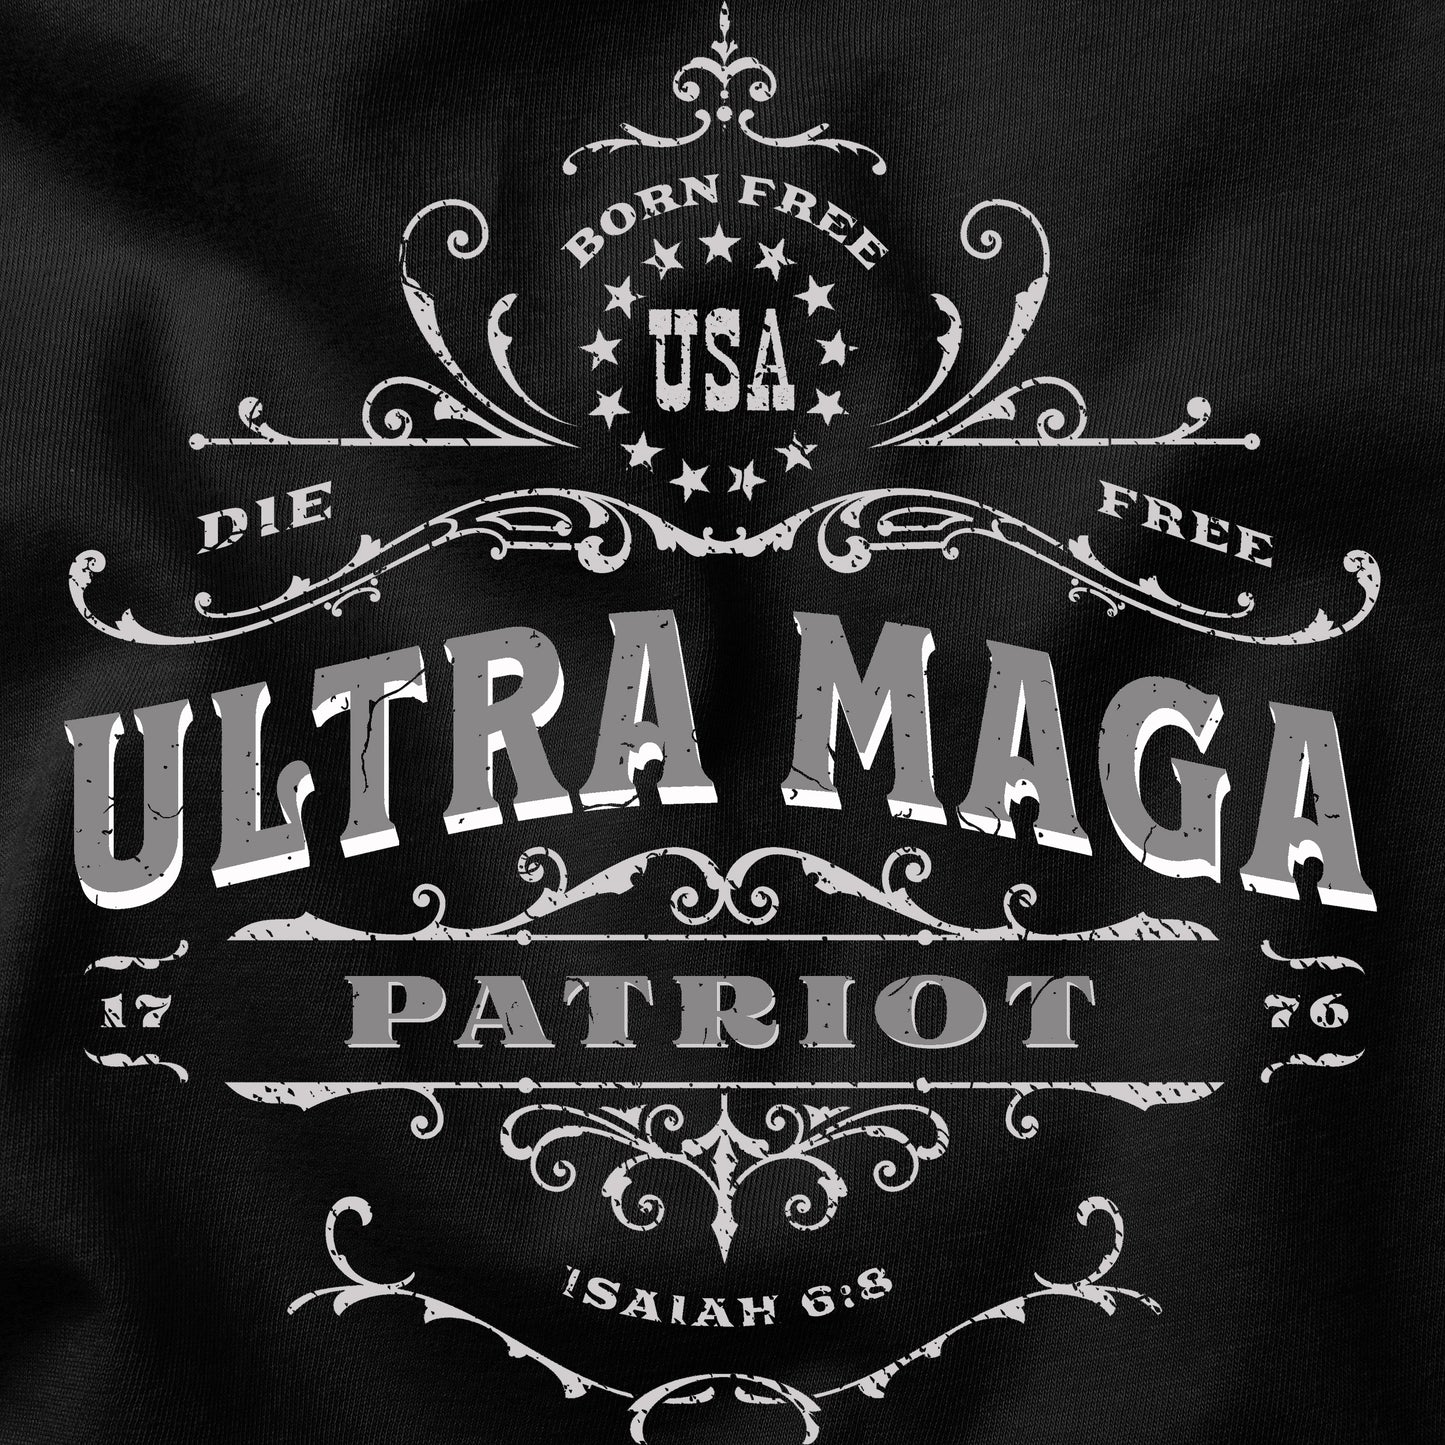 Ultra maga t-shirt design closeup